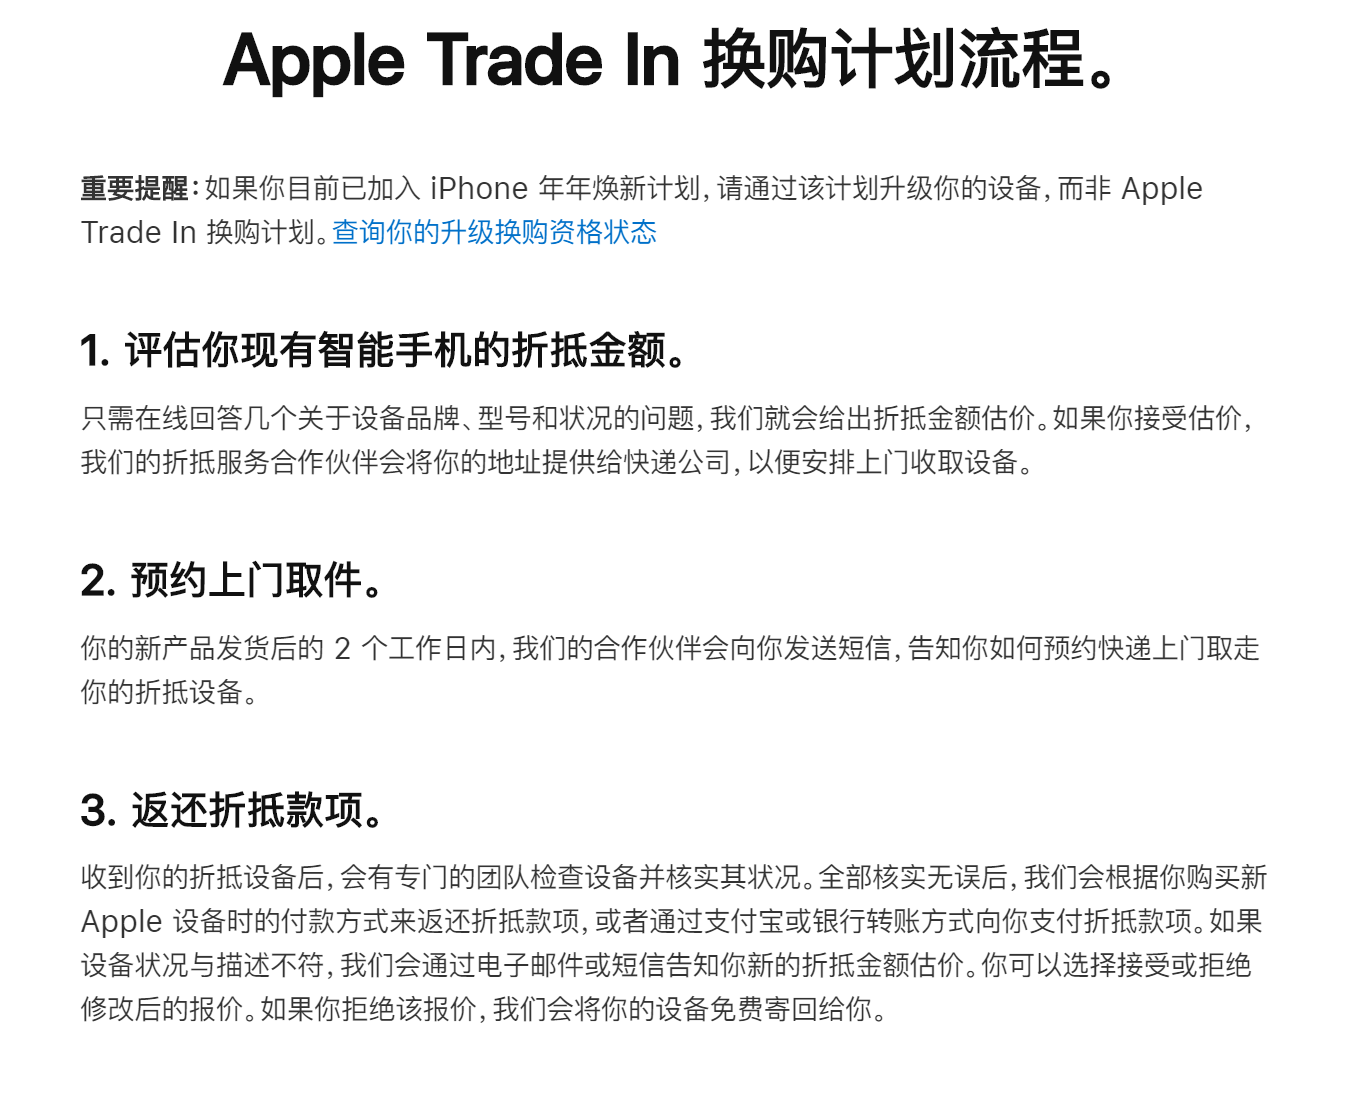 如何升级换购 - iPhone 年年焕新计划 - Apple (中国大陆)